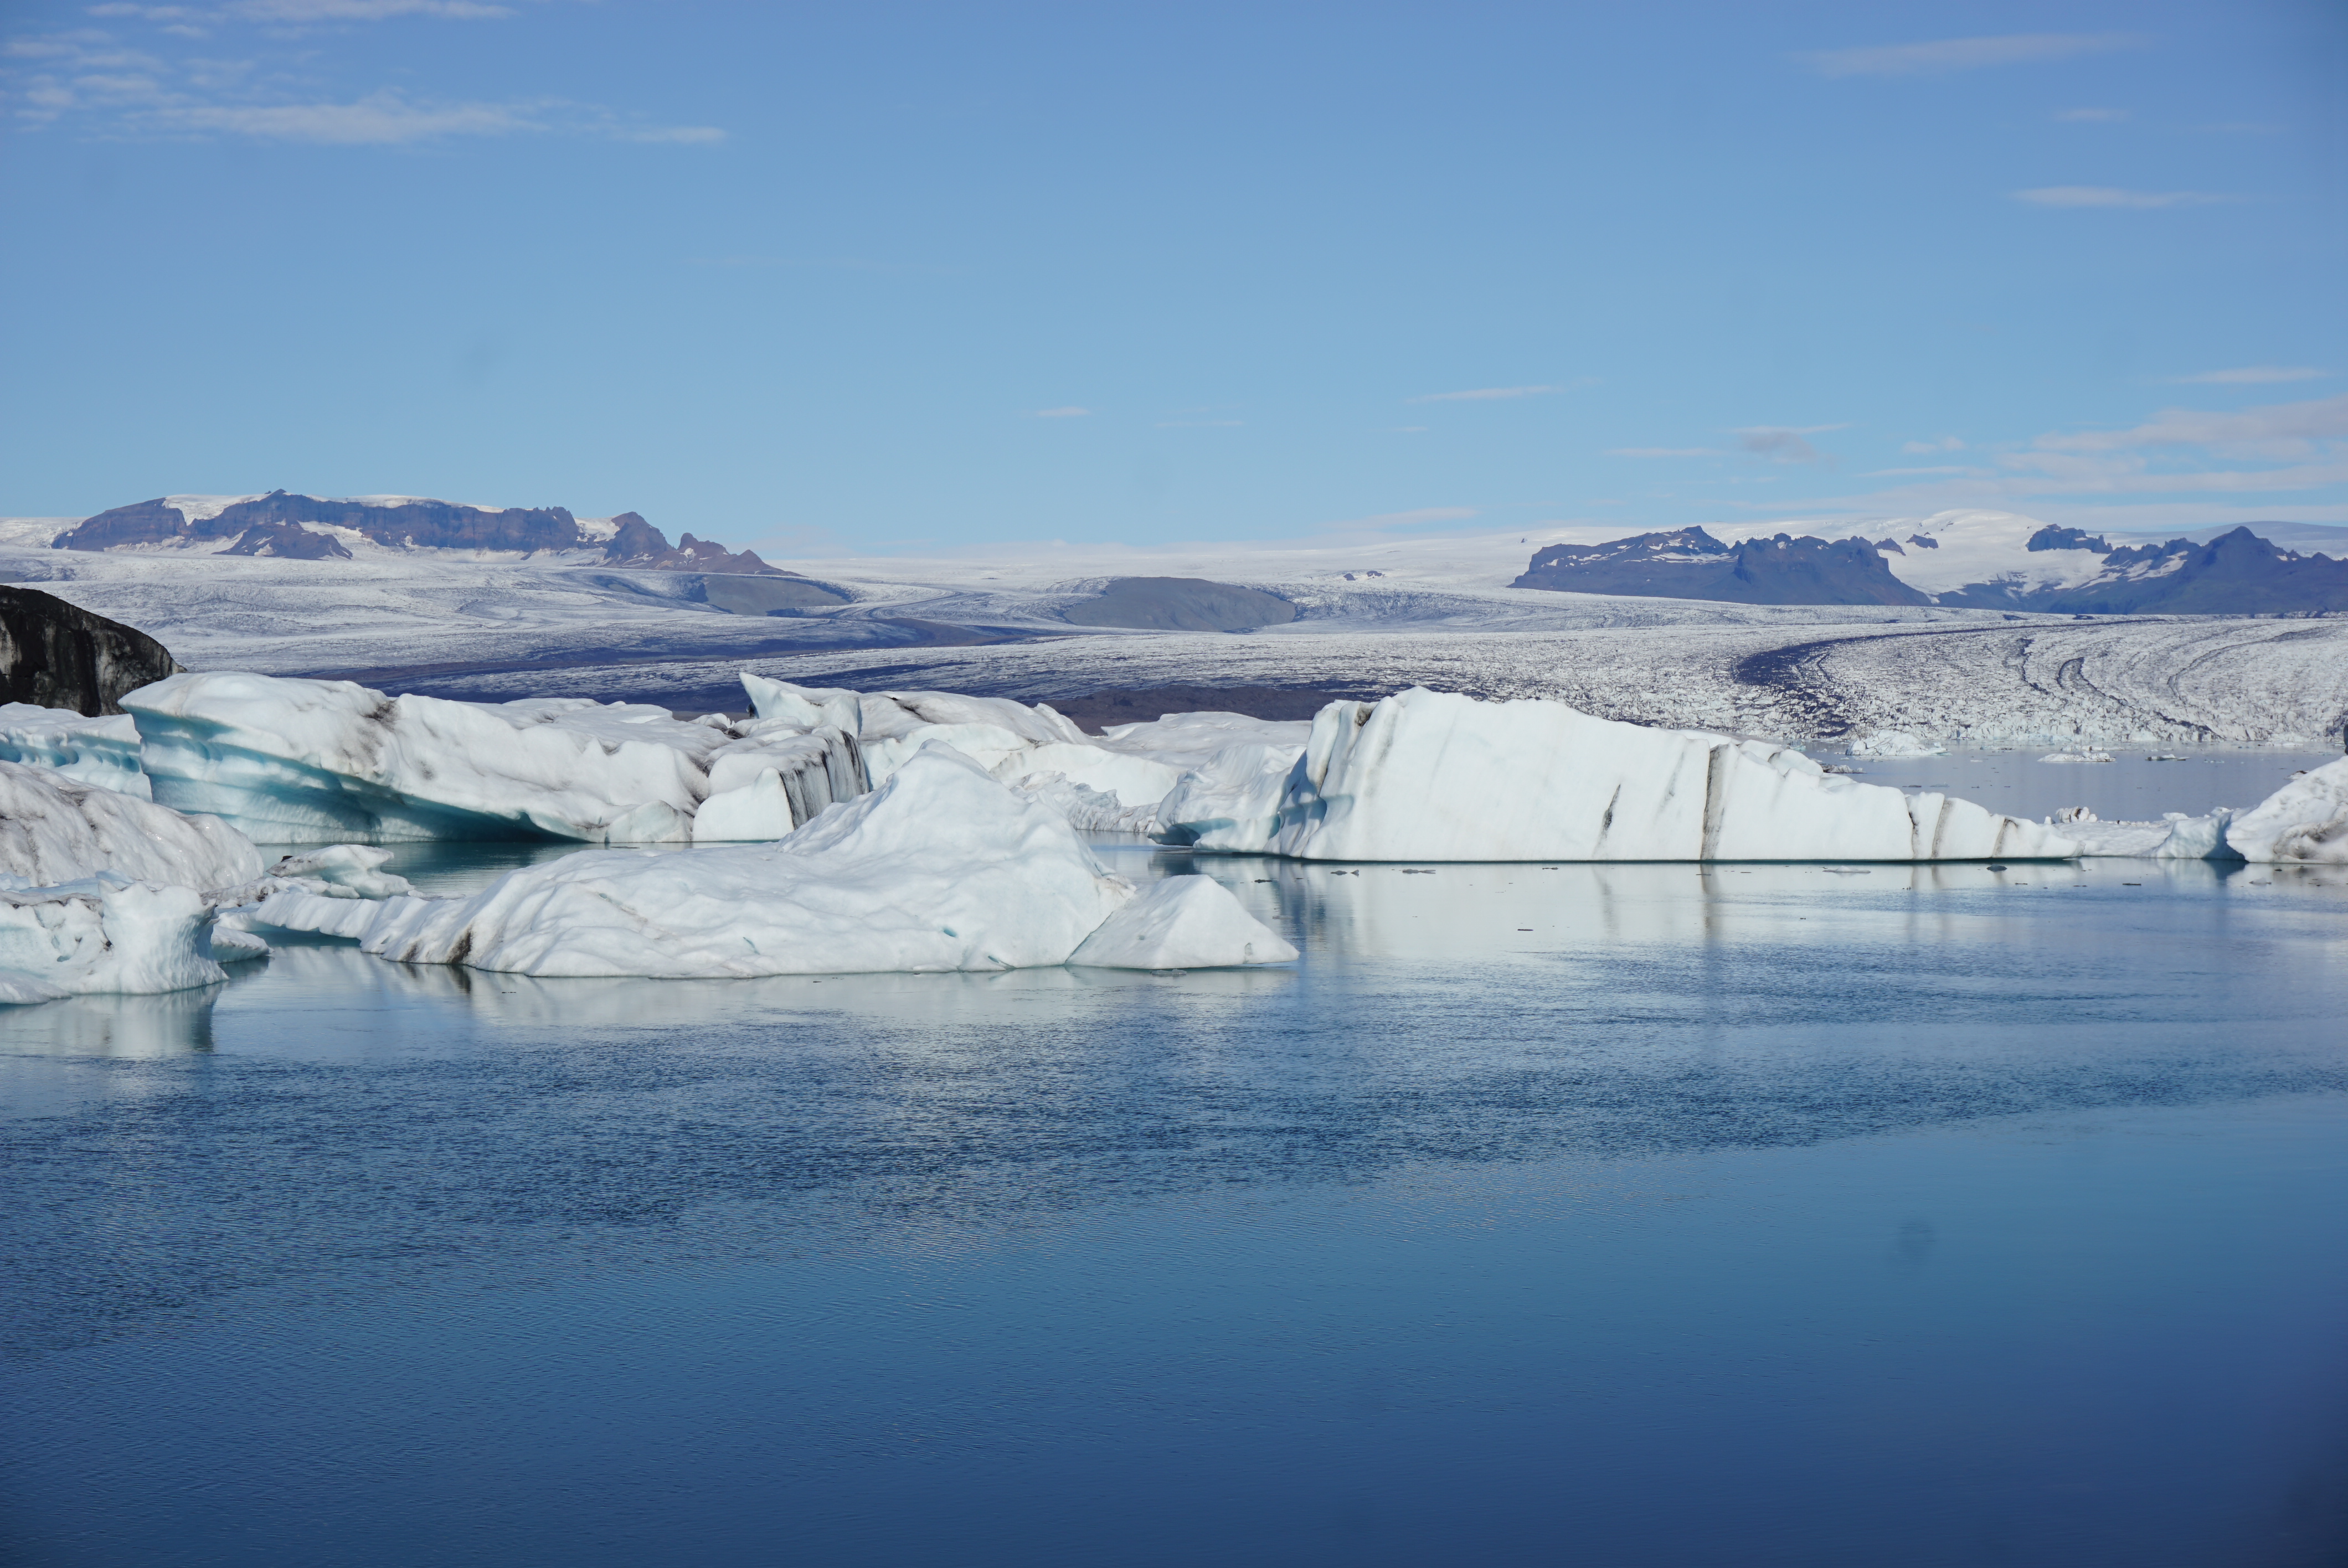 8 22 アイスランドの氷河を堪能 スカフタフェットル国立公園 ダイヤモンドビーチ アイスランドの山キャンプ タビソダチ 365日子連れで世界をぶらり